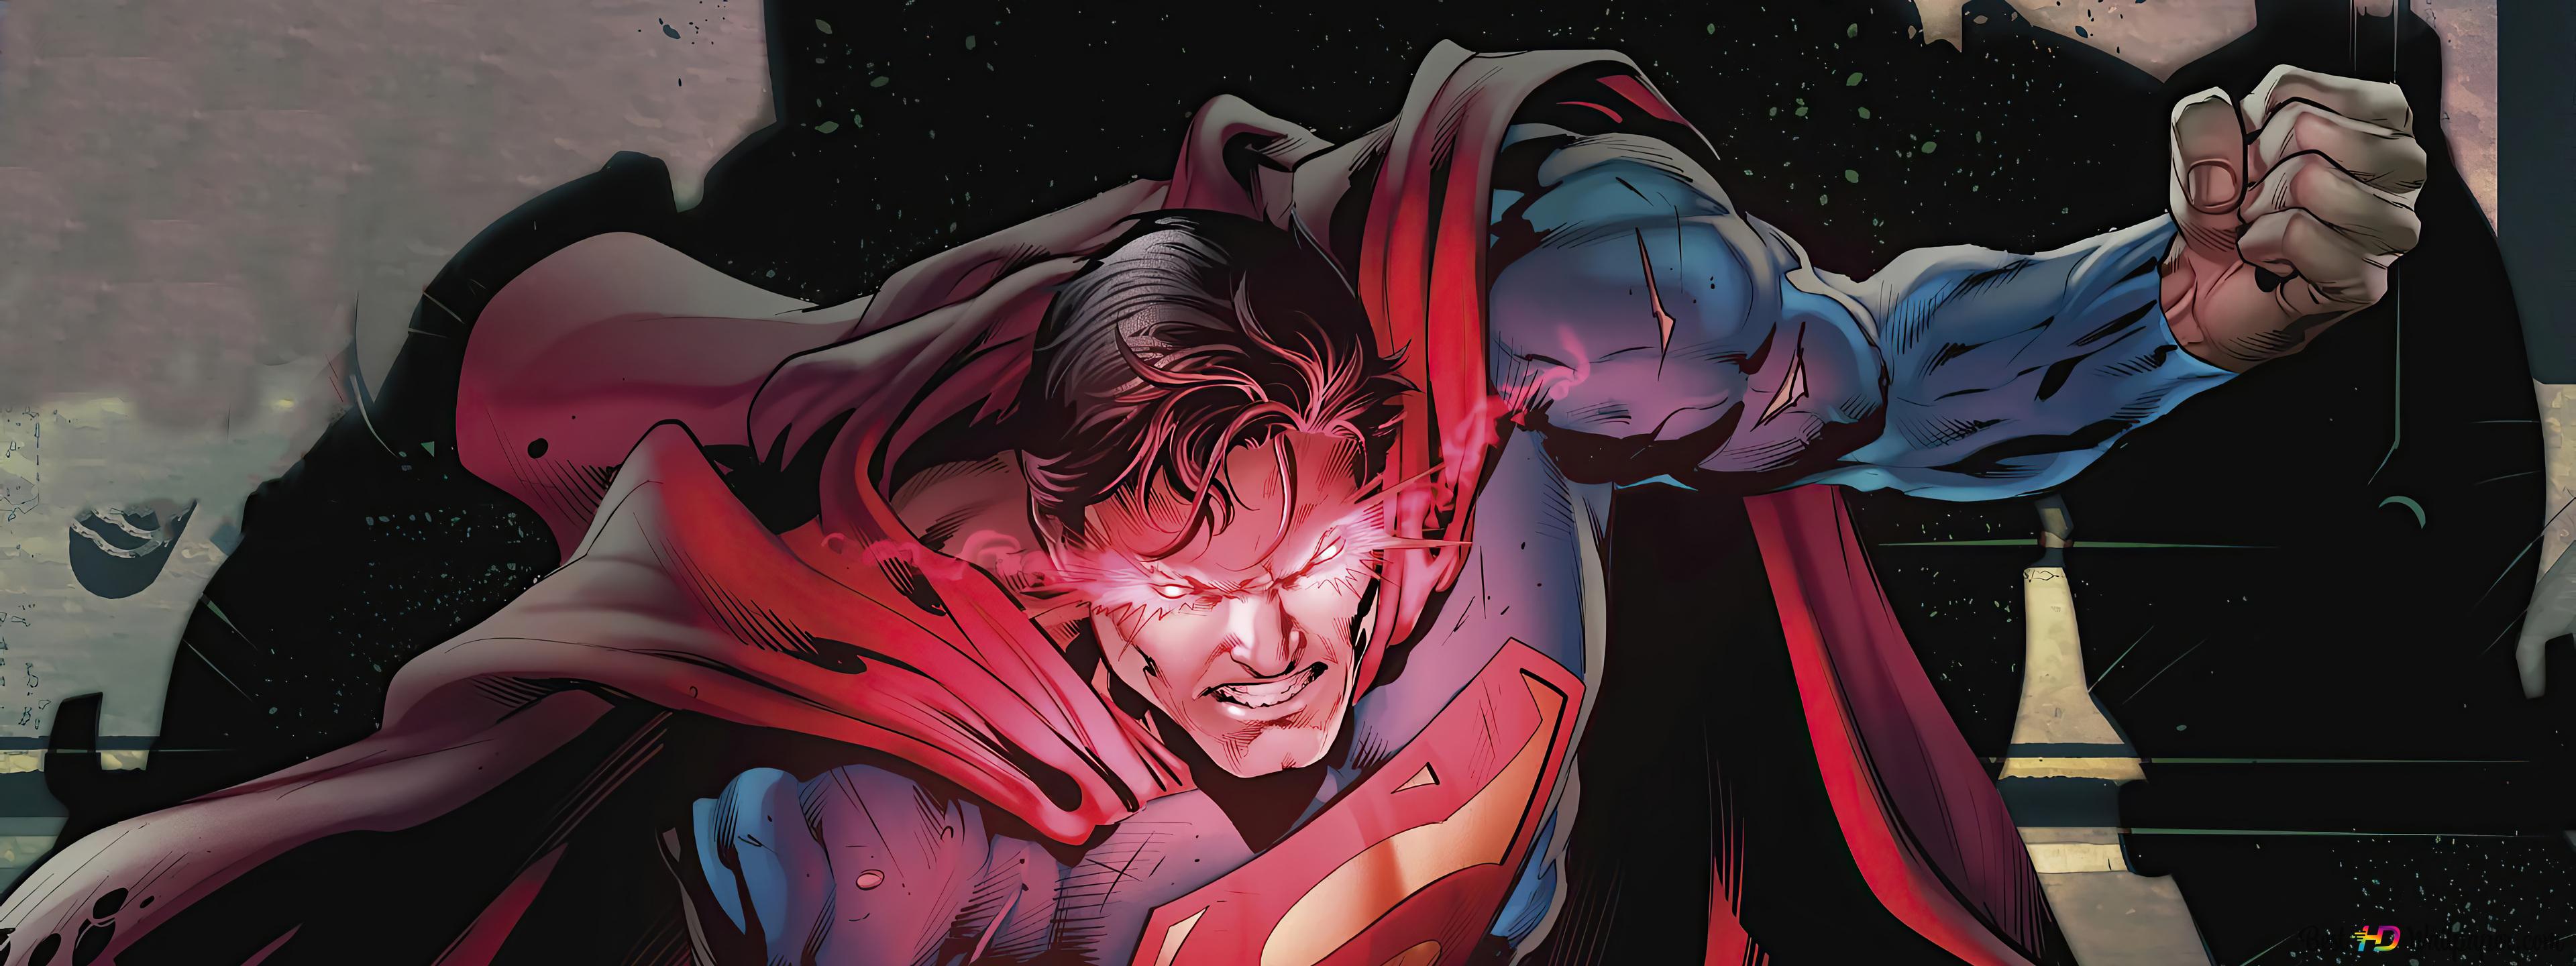 Superman Heat Vision (DC) Comics 4K wallpaper download